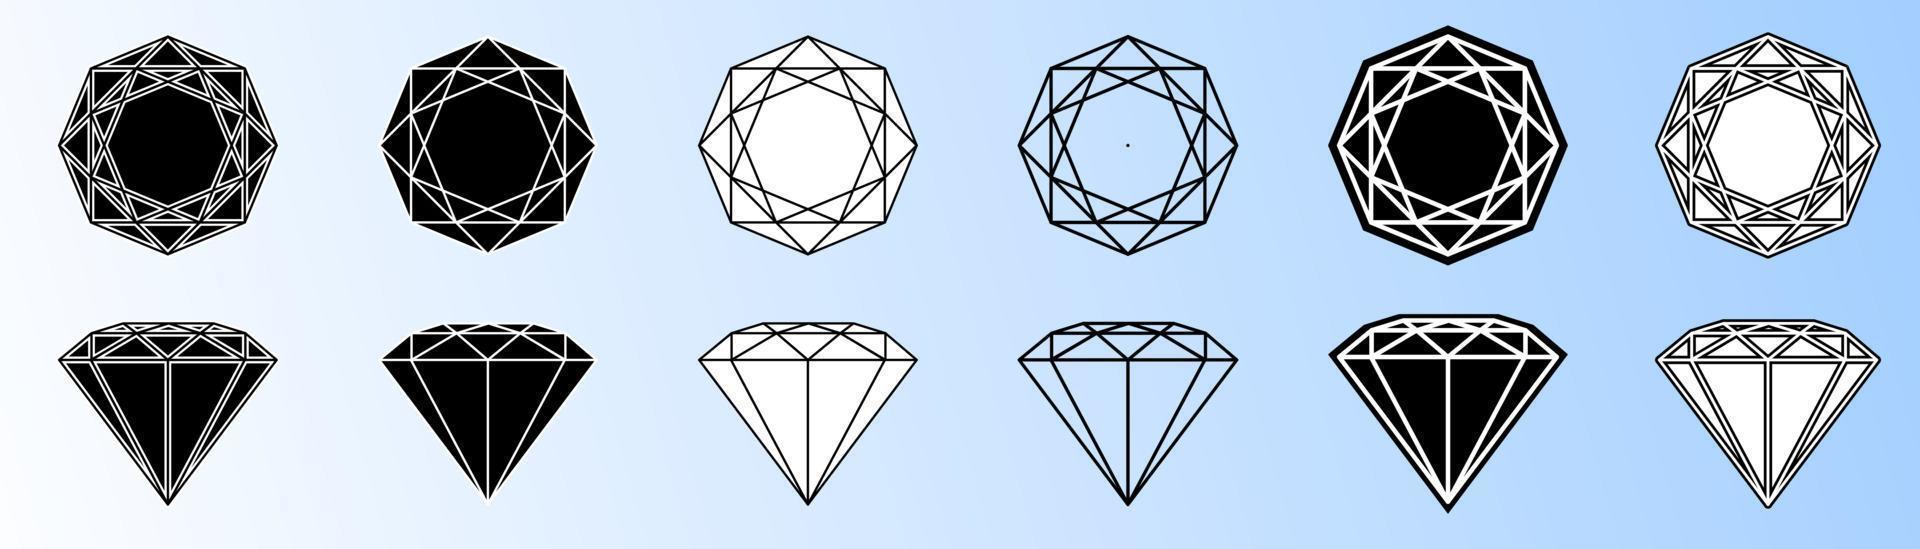 varios diamantes silueta en estilo blanco y negro vector